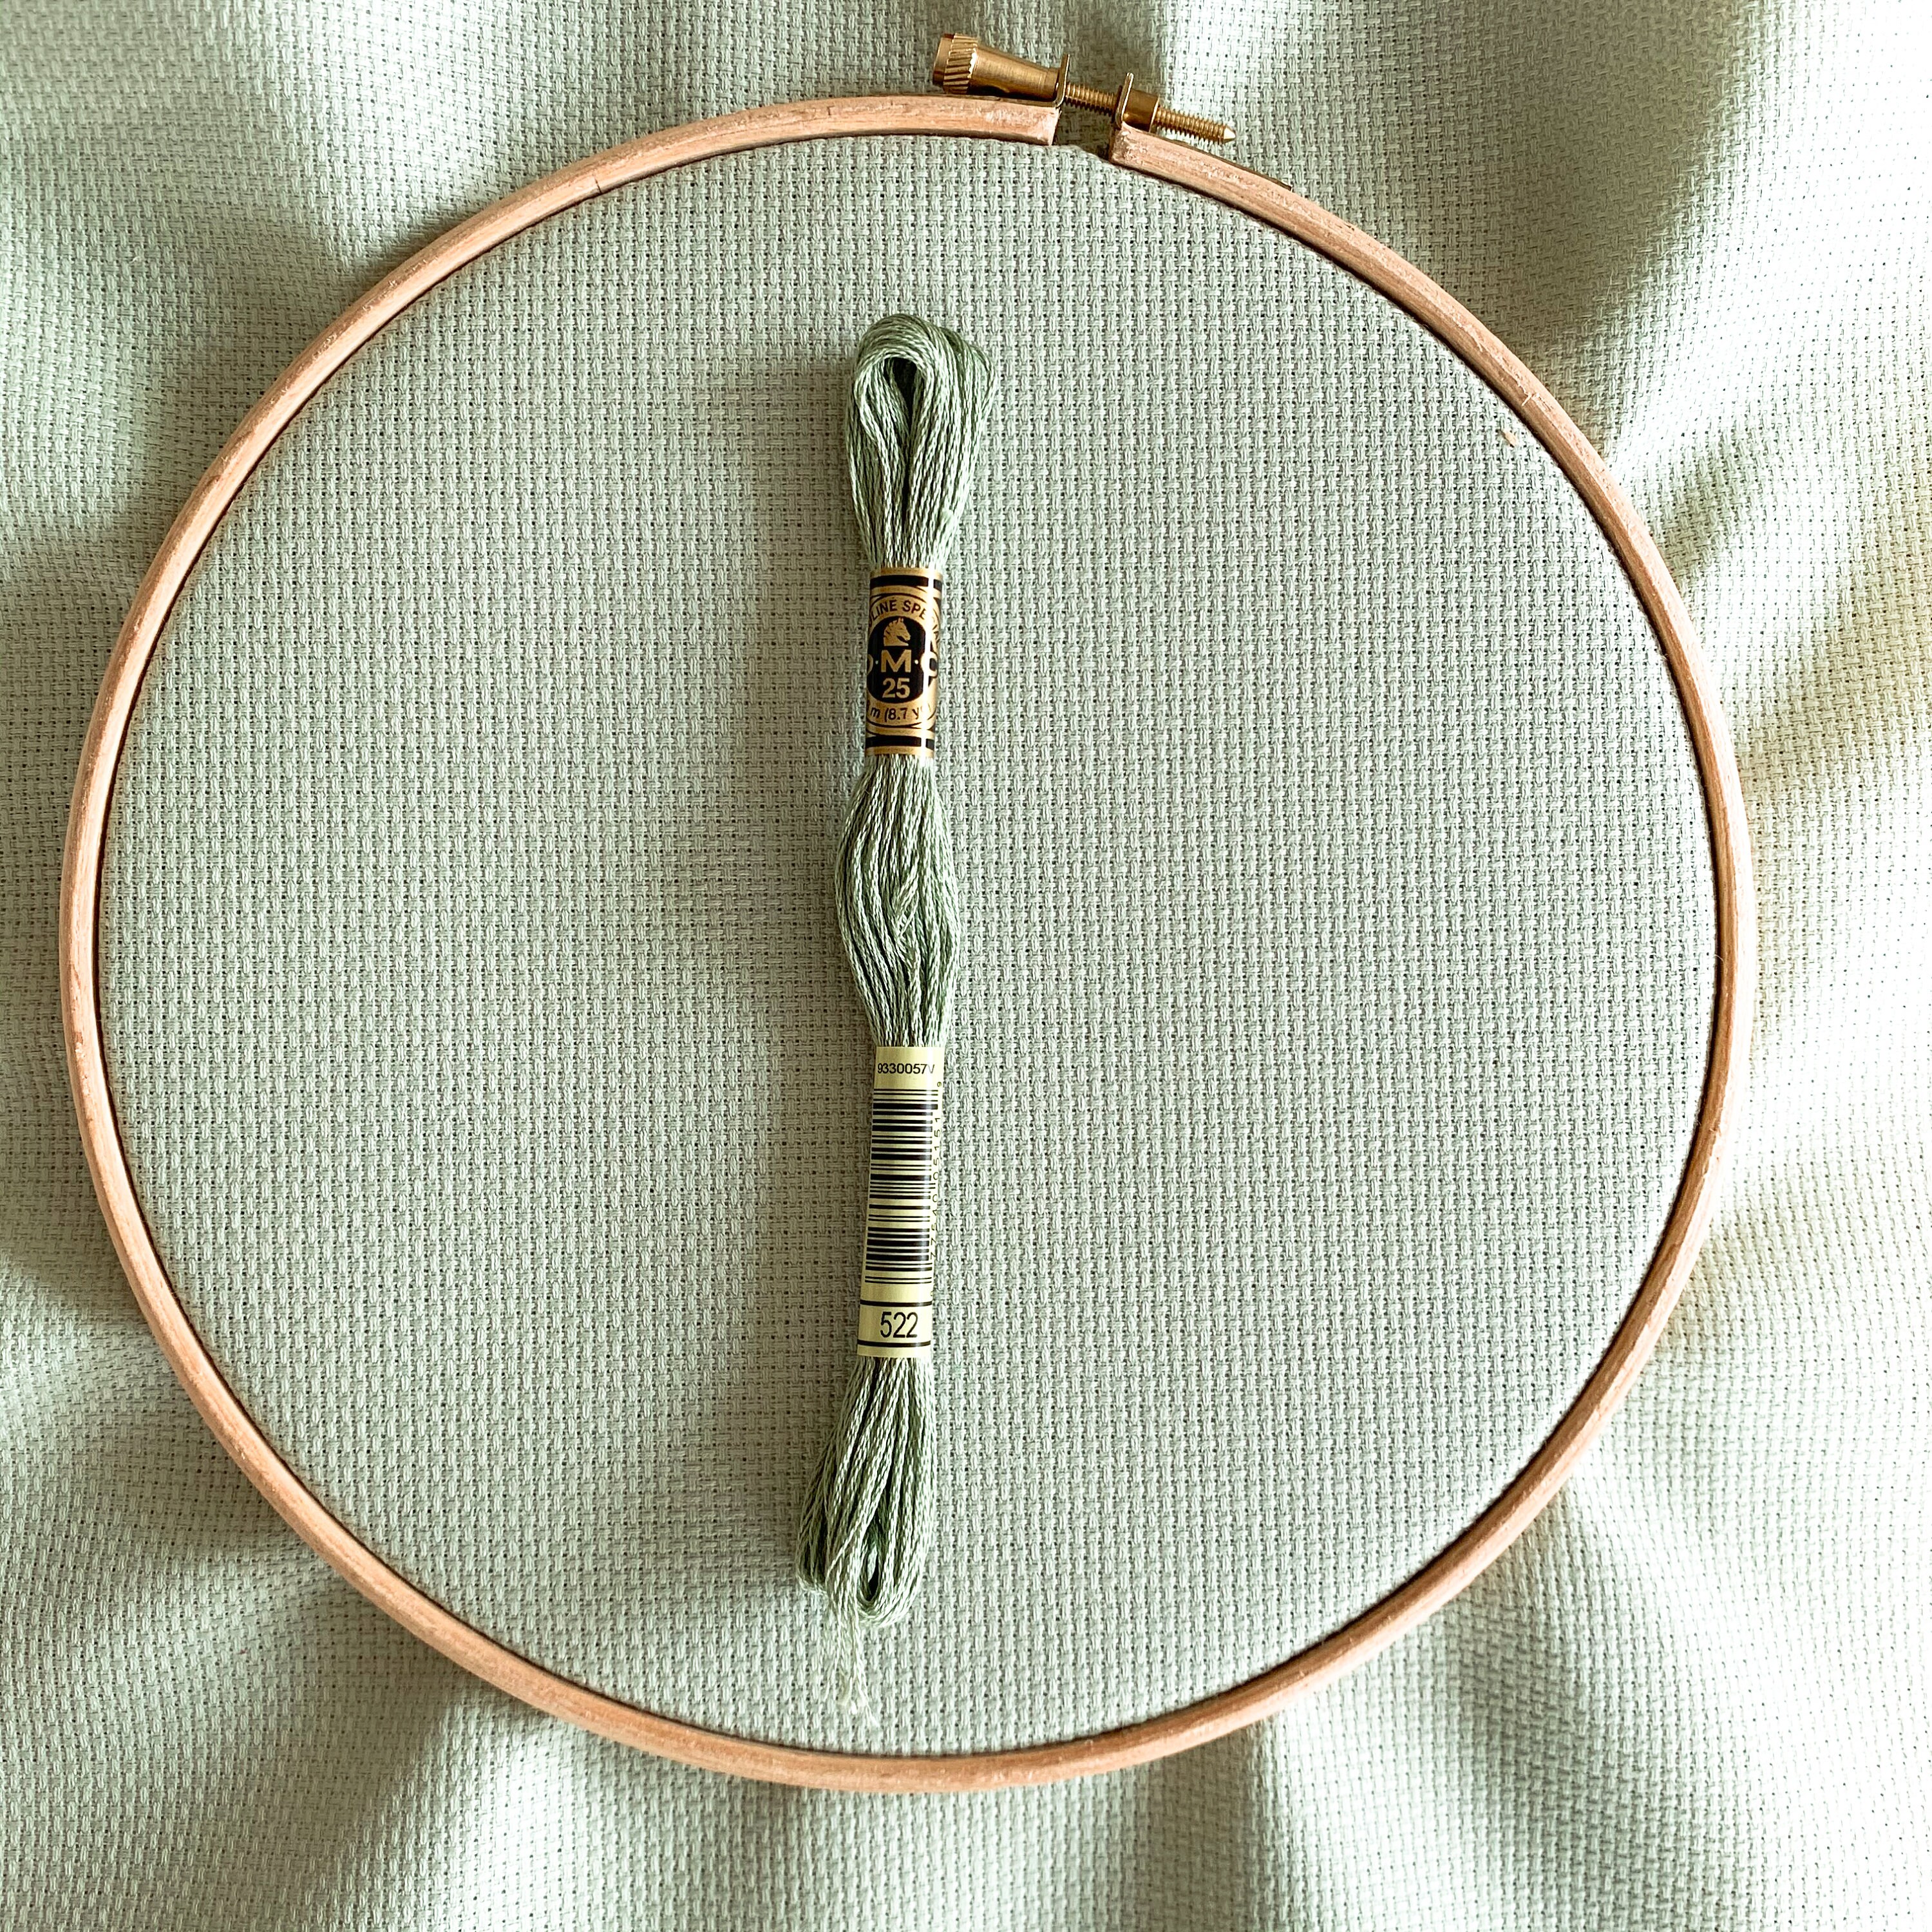 Wooden embroidery hoops - Studio Koekoek